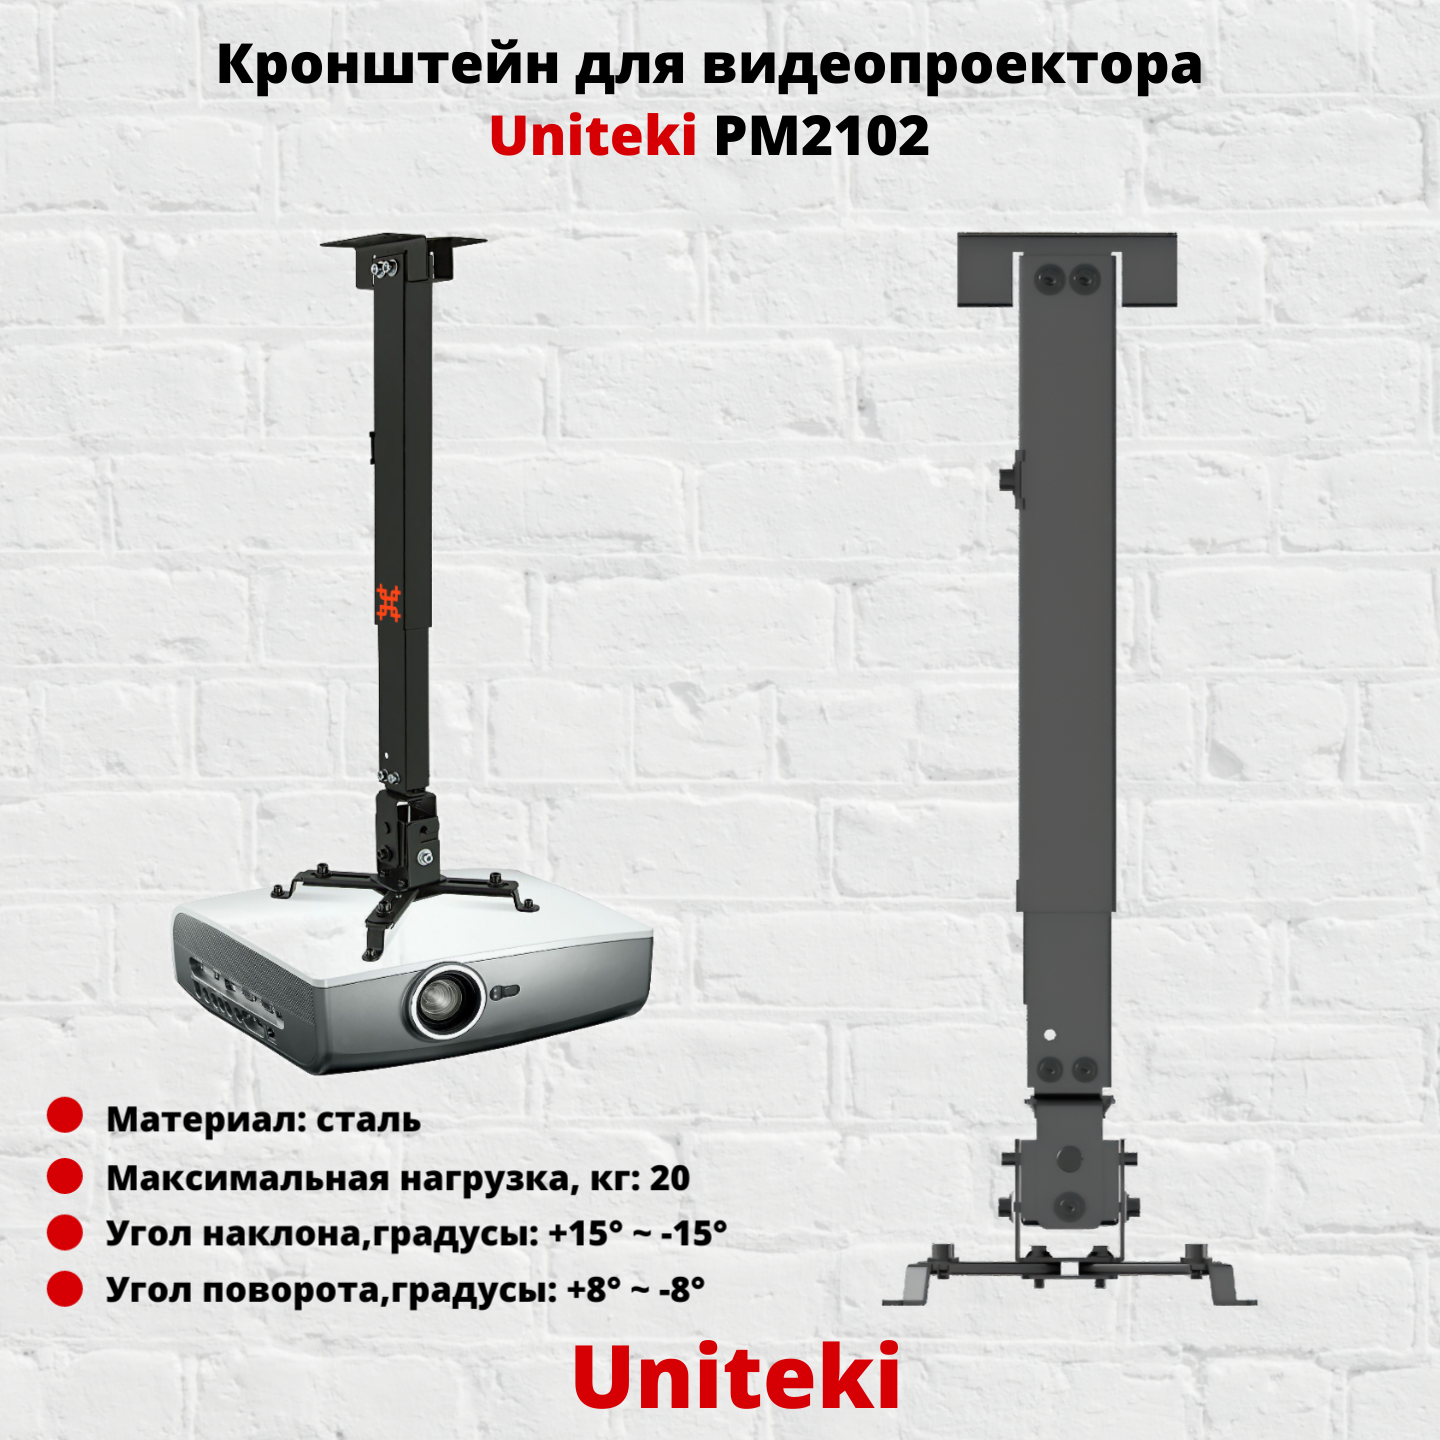 Кронштейн для видеопроектора Uniteki PM2102B черный